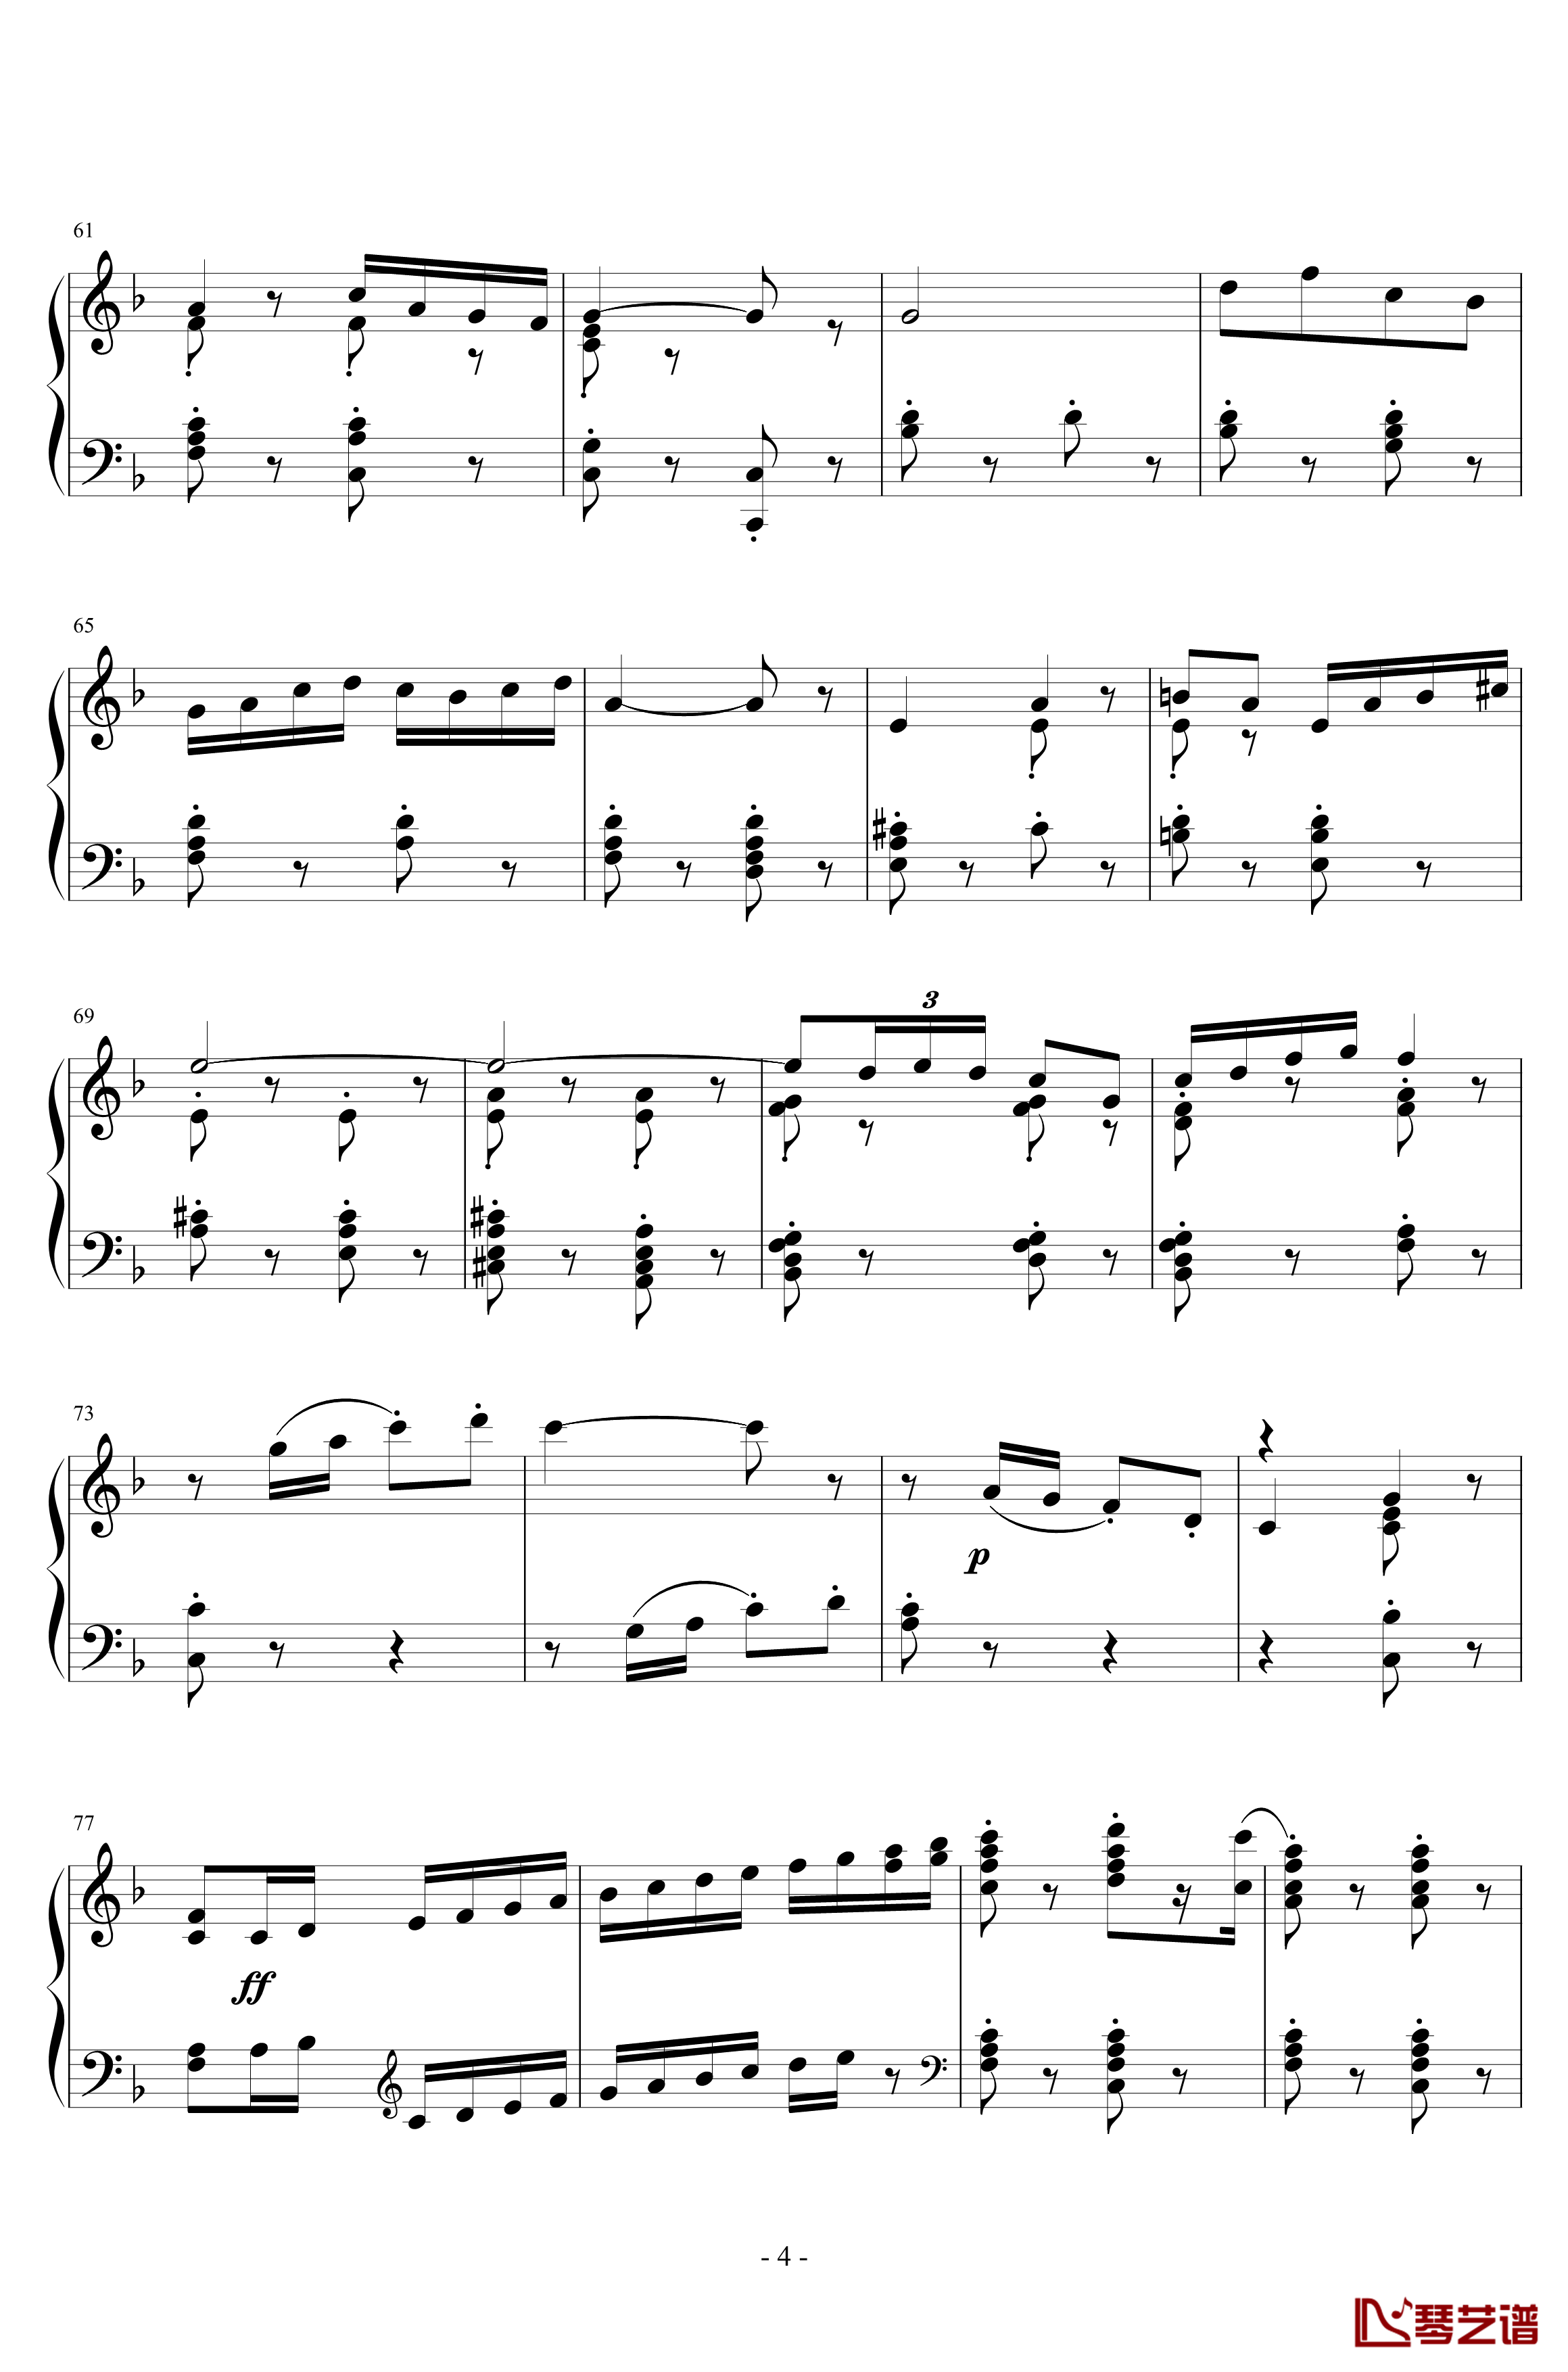 卡门序曲钢琴谱-朝鲜风格-比才-Bizet4